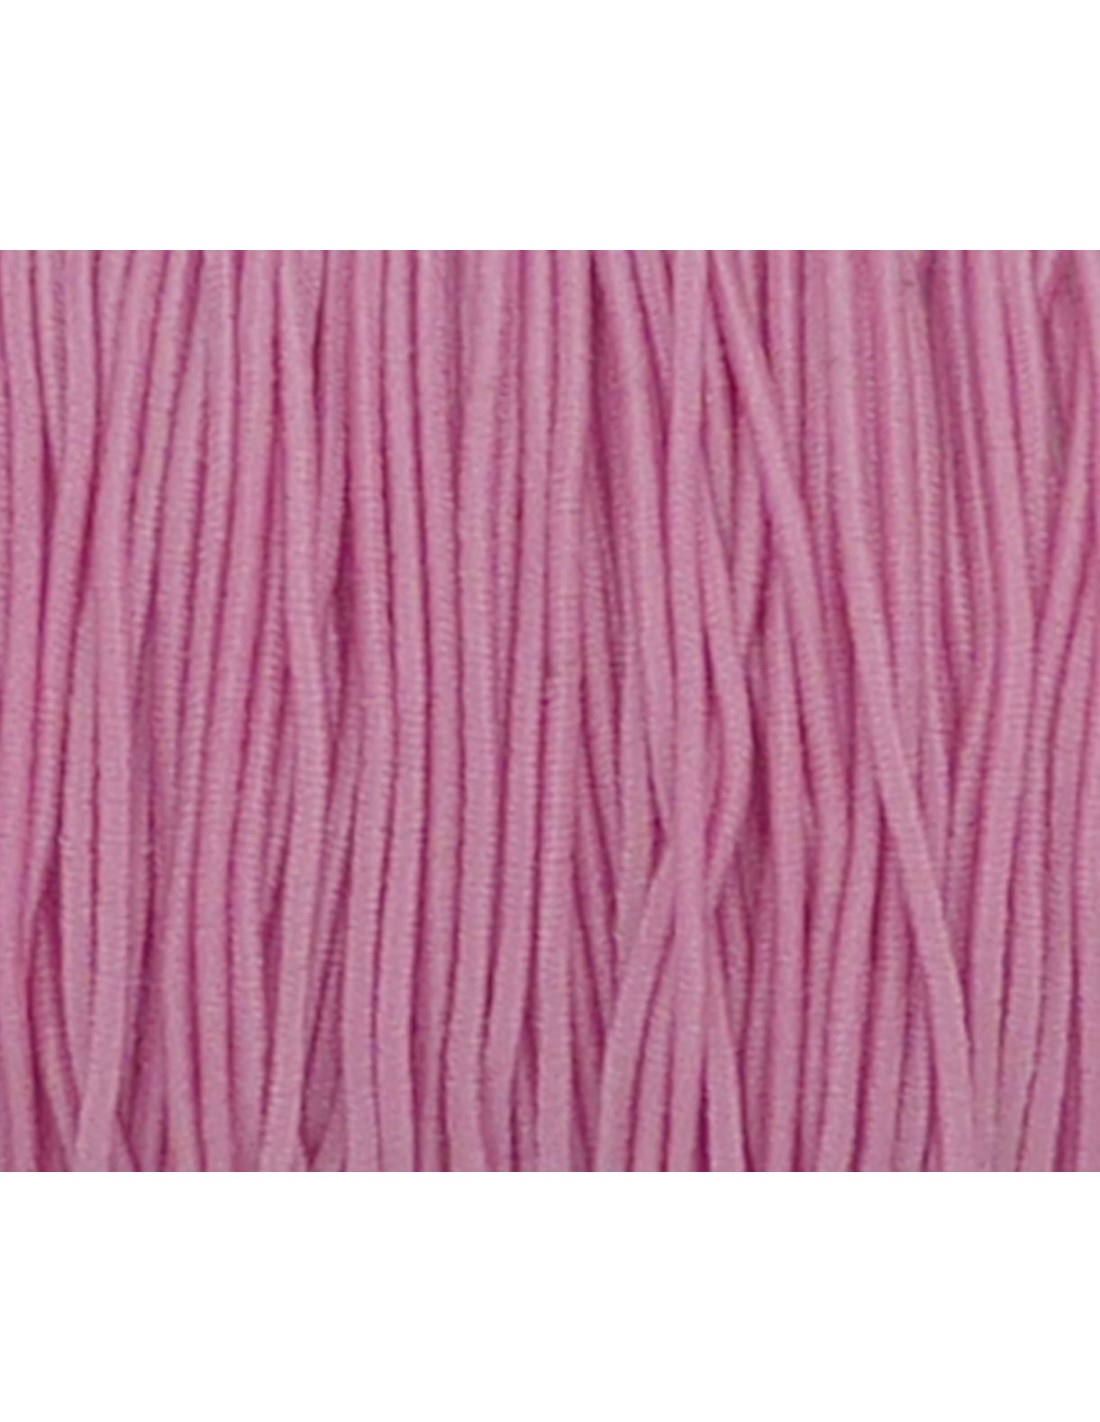 Fil élastique 1 mm Elasticity - Doré rose satiné x25m - Perles & Co